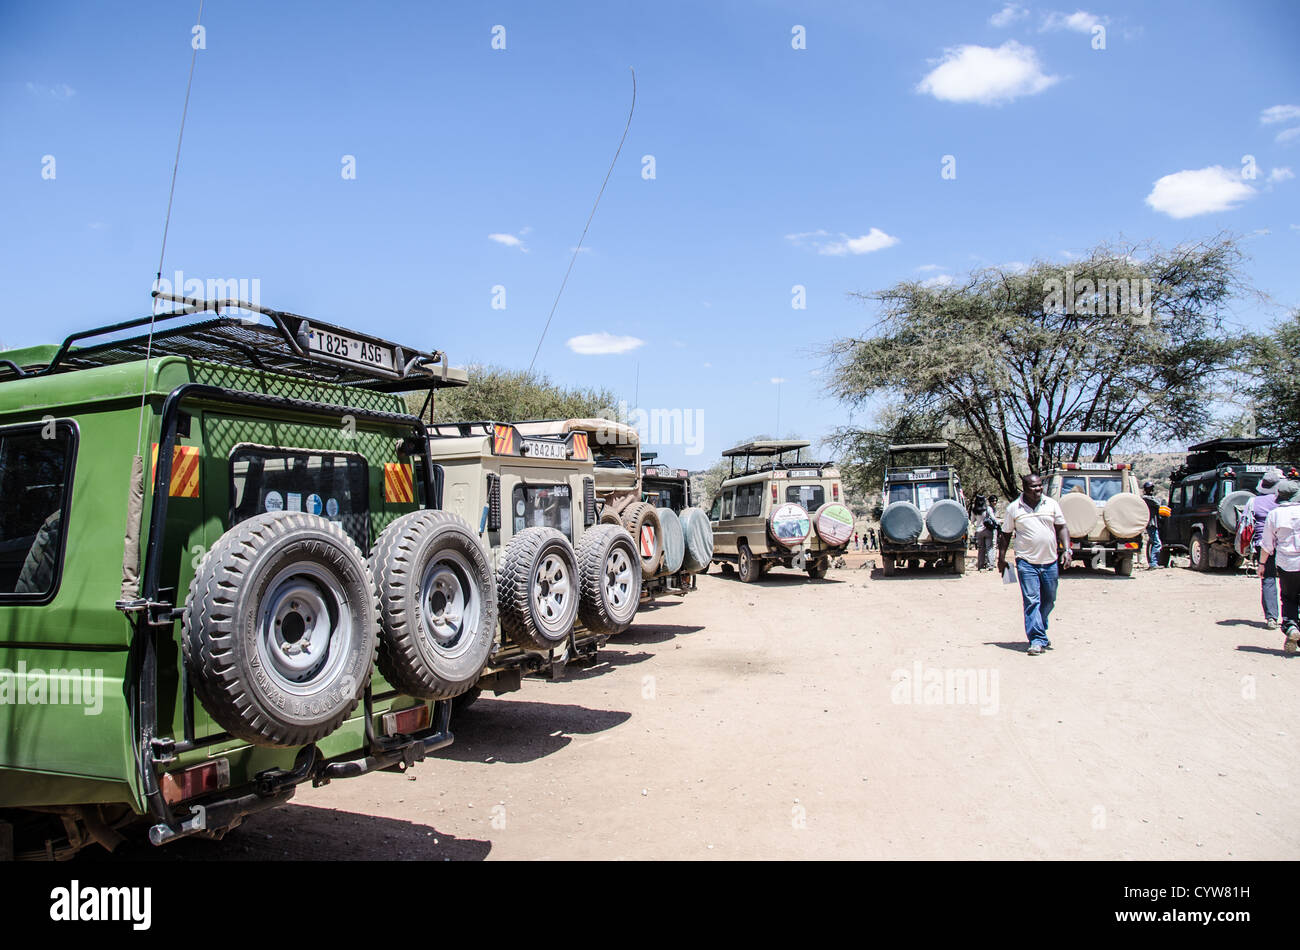 TARANGIRE-NATIONALPARK, Tansania - die allgegenwärtigen Toyota Landcruiser, die bevorzugt werden, da Safari-Fahrzeuge auf einem Parkplatz an einem ausgewiesenen Picknick-Platz im Tarangire-Nationalpark im Norden Tansanias stehen, nicht weit vom Ngorongoro-Krater und der Serengeti. Der Ngorongoro-Krater, der zum UNESCO-Weltkulturerbe gehört, ist ein riesiger vulkanischer Krater im Norden Tansanias. Sie wurde vor 2-3 Millionen Jahren gegründet, hat einen Durchmesser von etwa 20 Kilometern und ist die Heimat vielfältiger Tiere, einschließlich der „Big Five“-Wildtiere. Das Ngorongoro Conservation Area, das von den Maasai bewohnt wird, enthält ebenfalls einen bedeutenden Bogen Stockfoto